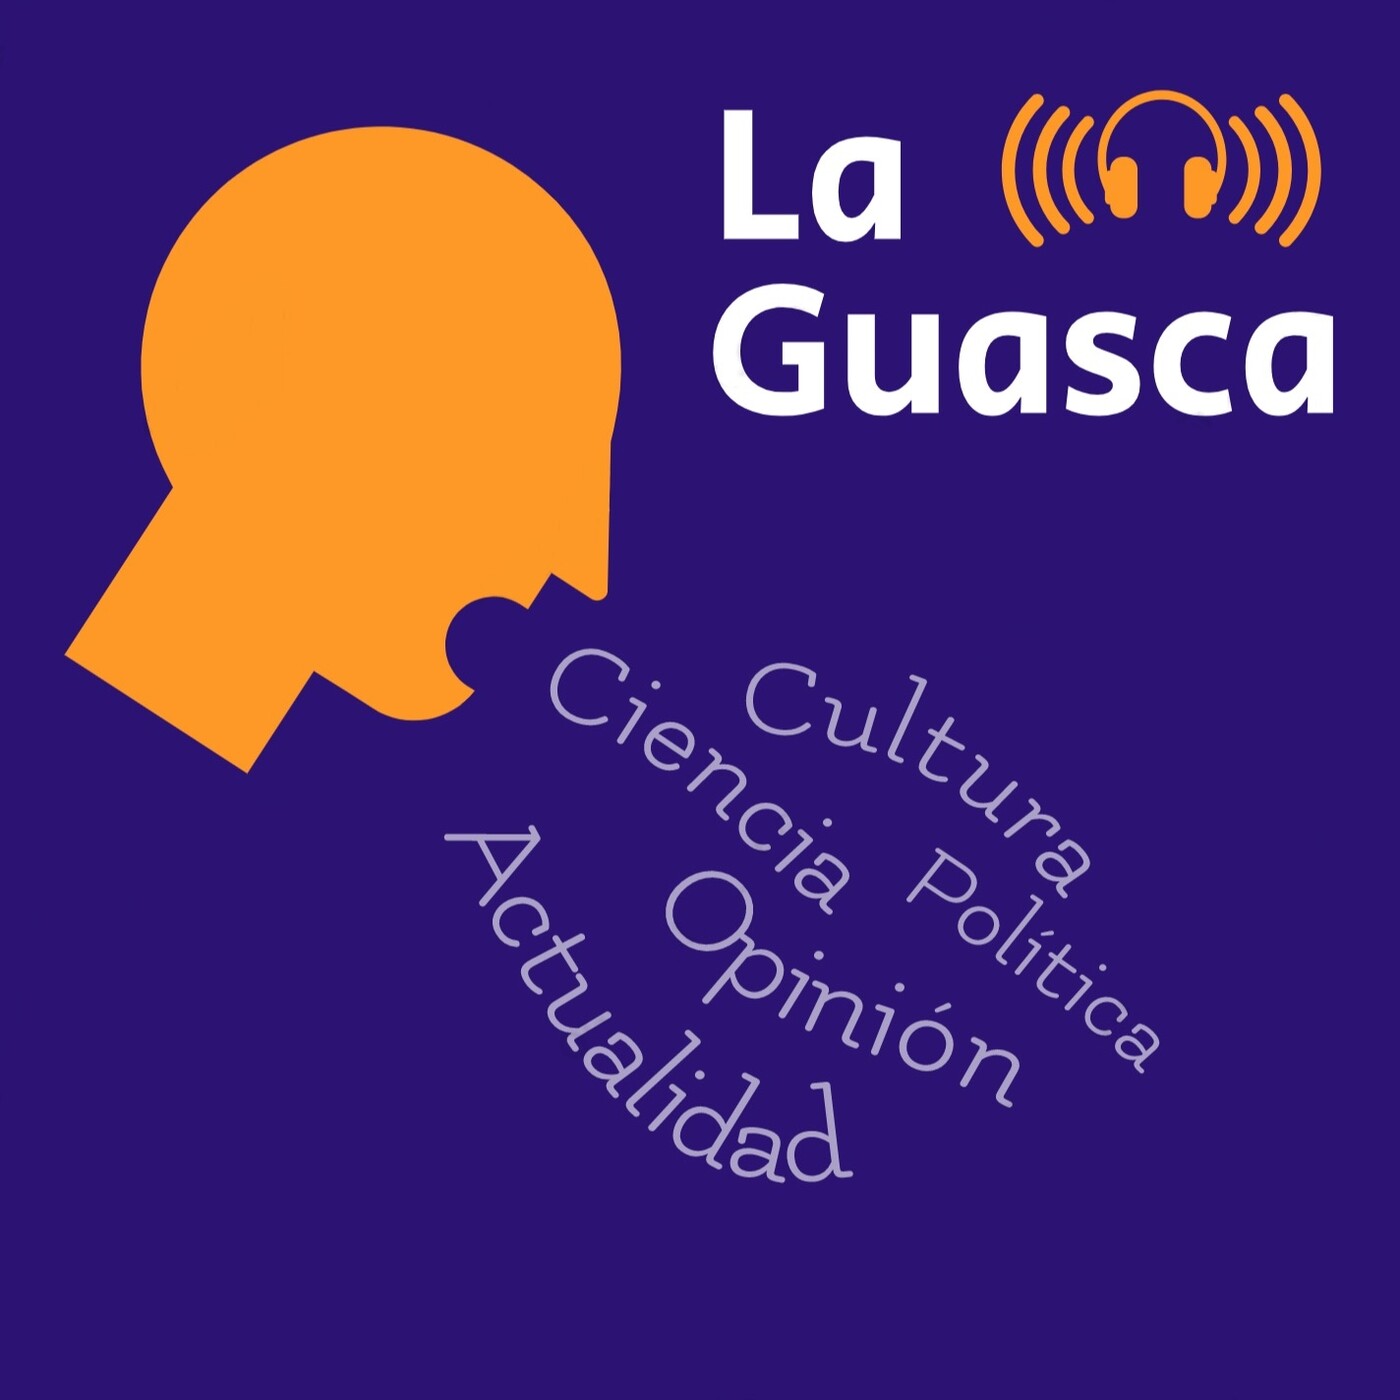 La Guasca